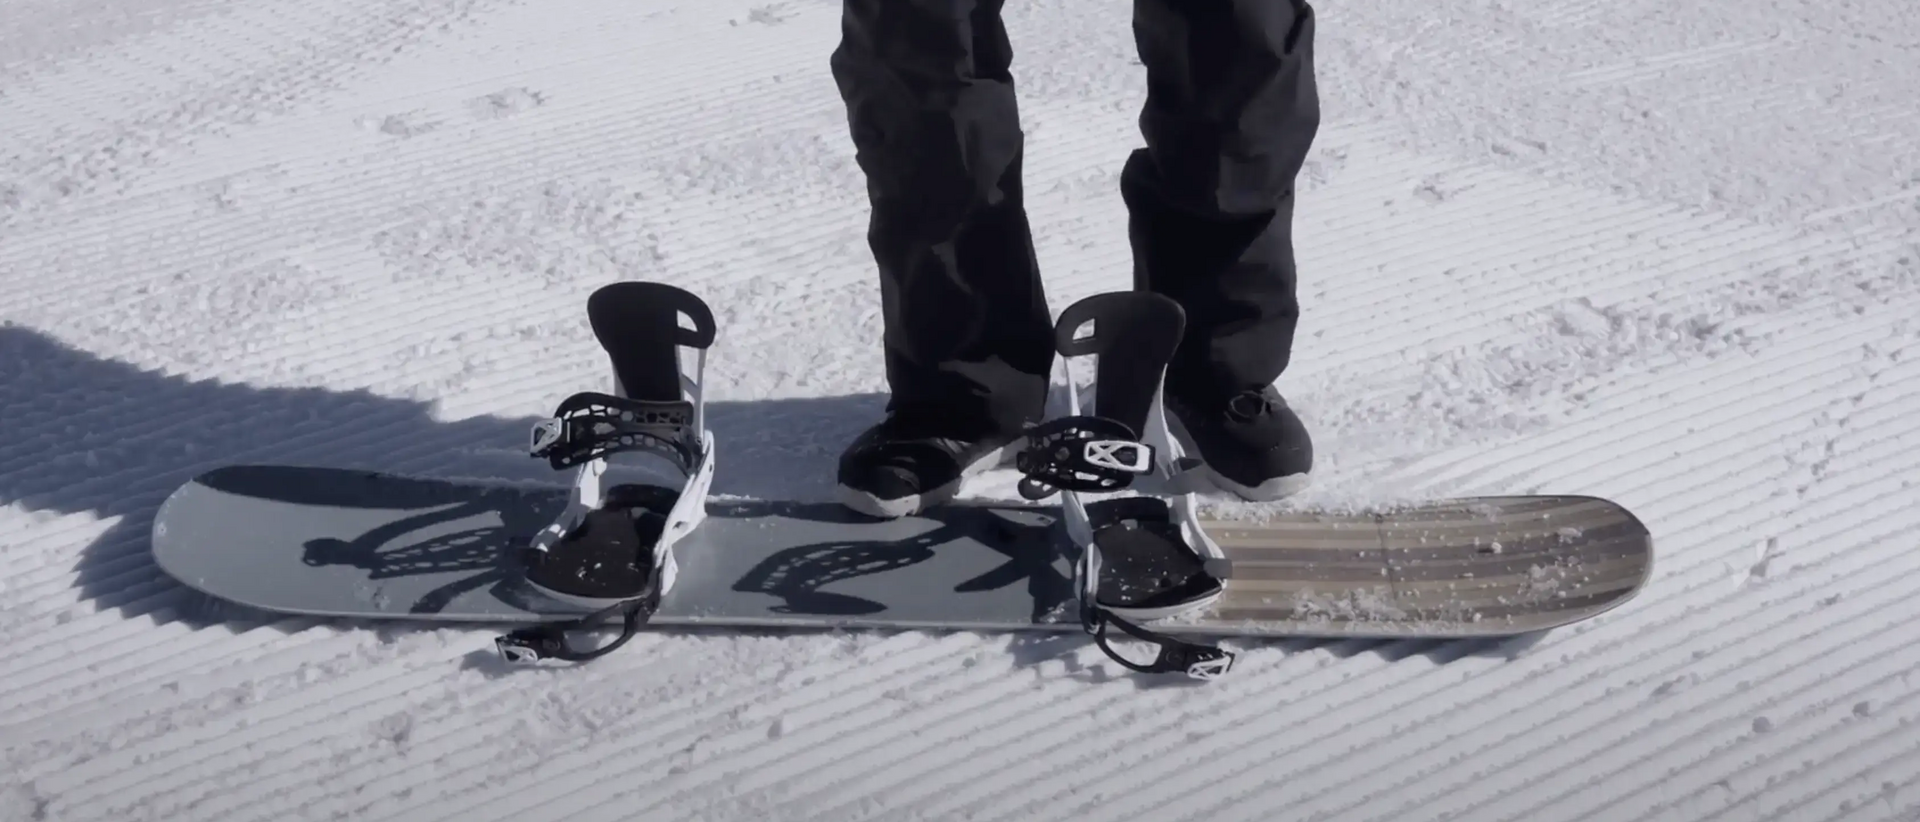 deska snowboardowa z wiązaniami leży na śniegu